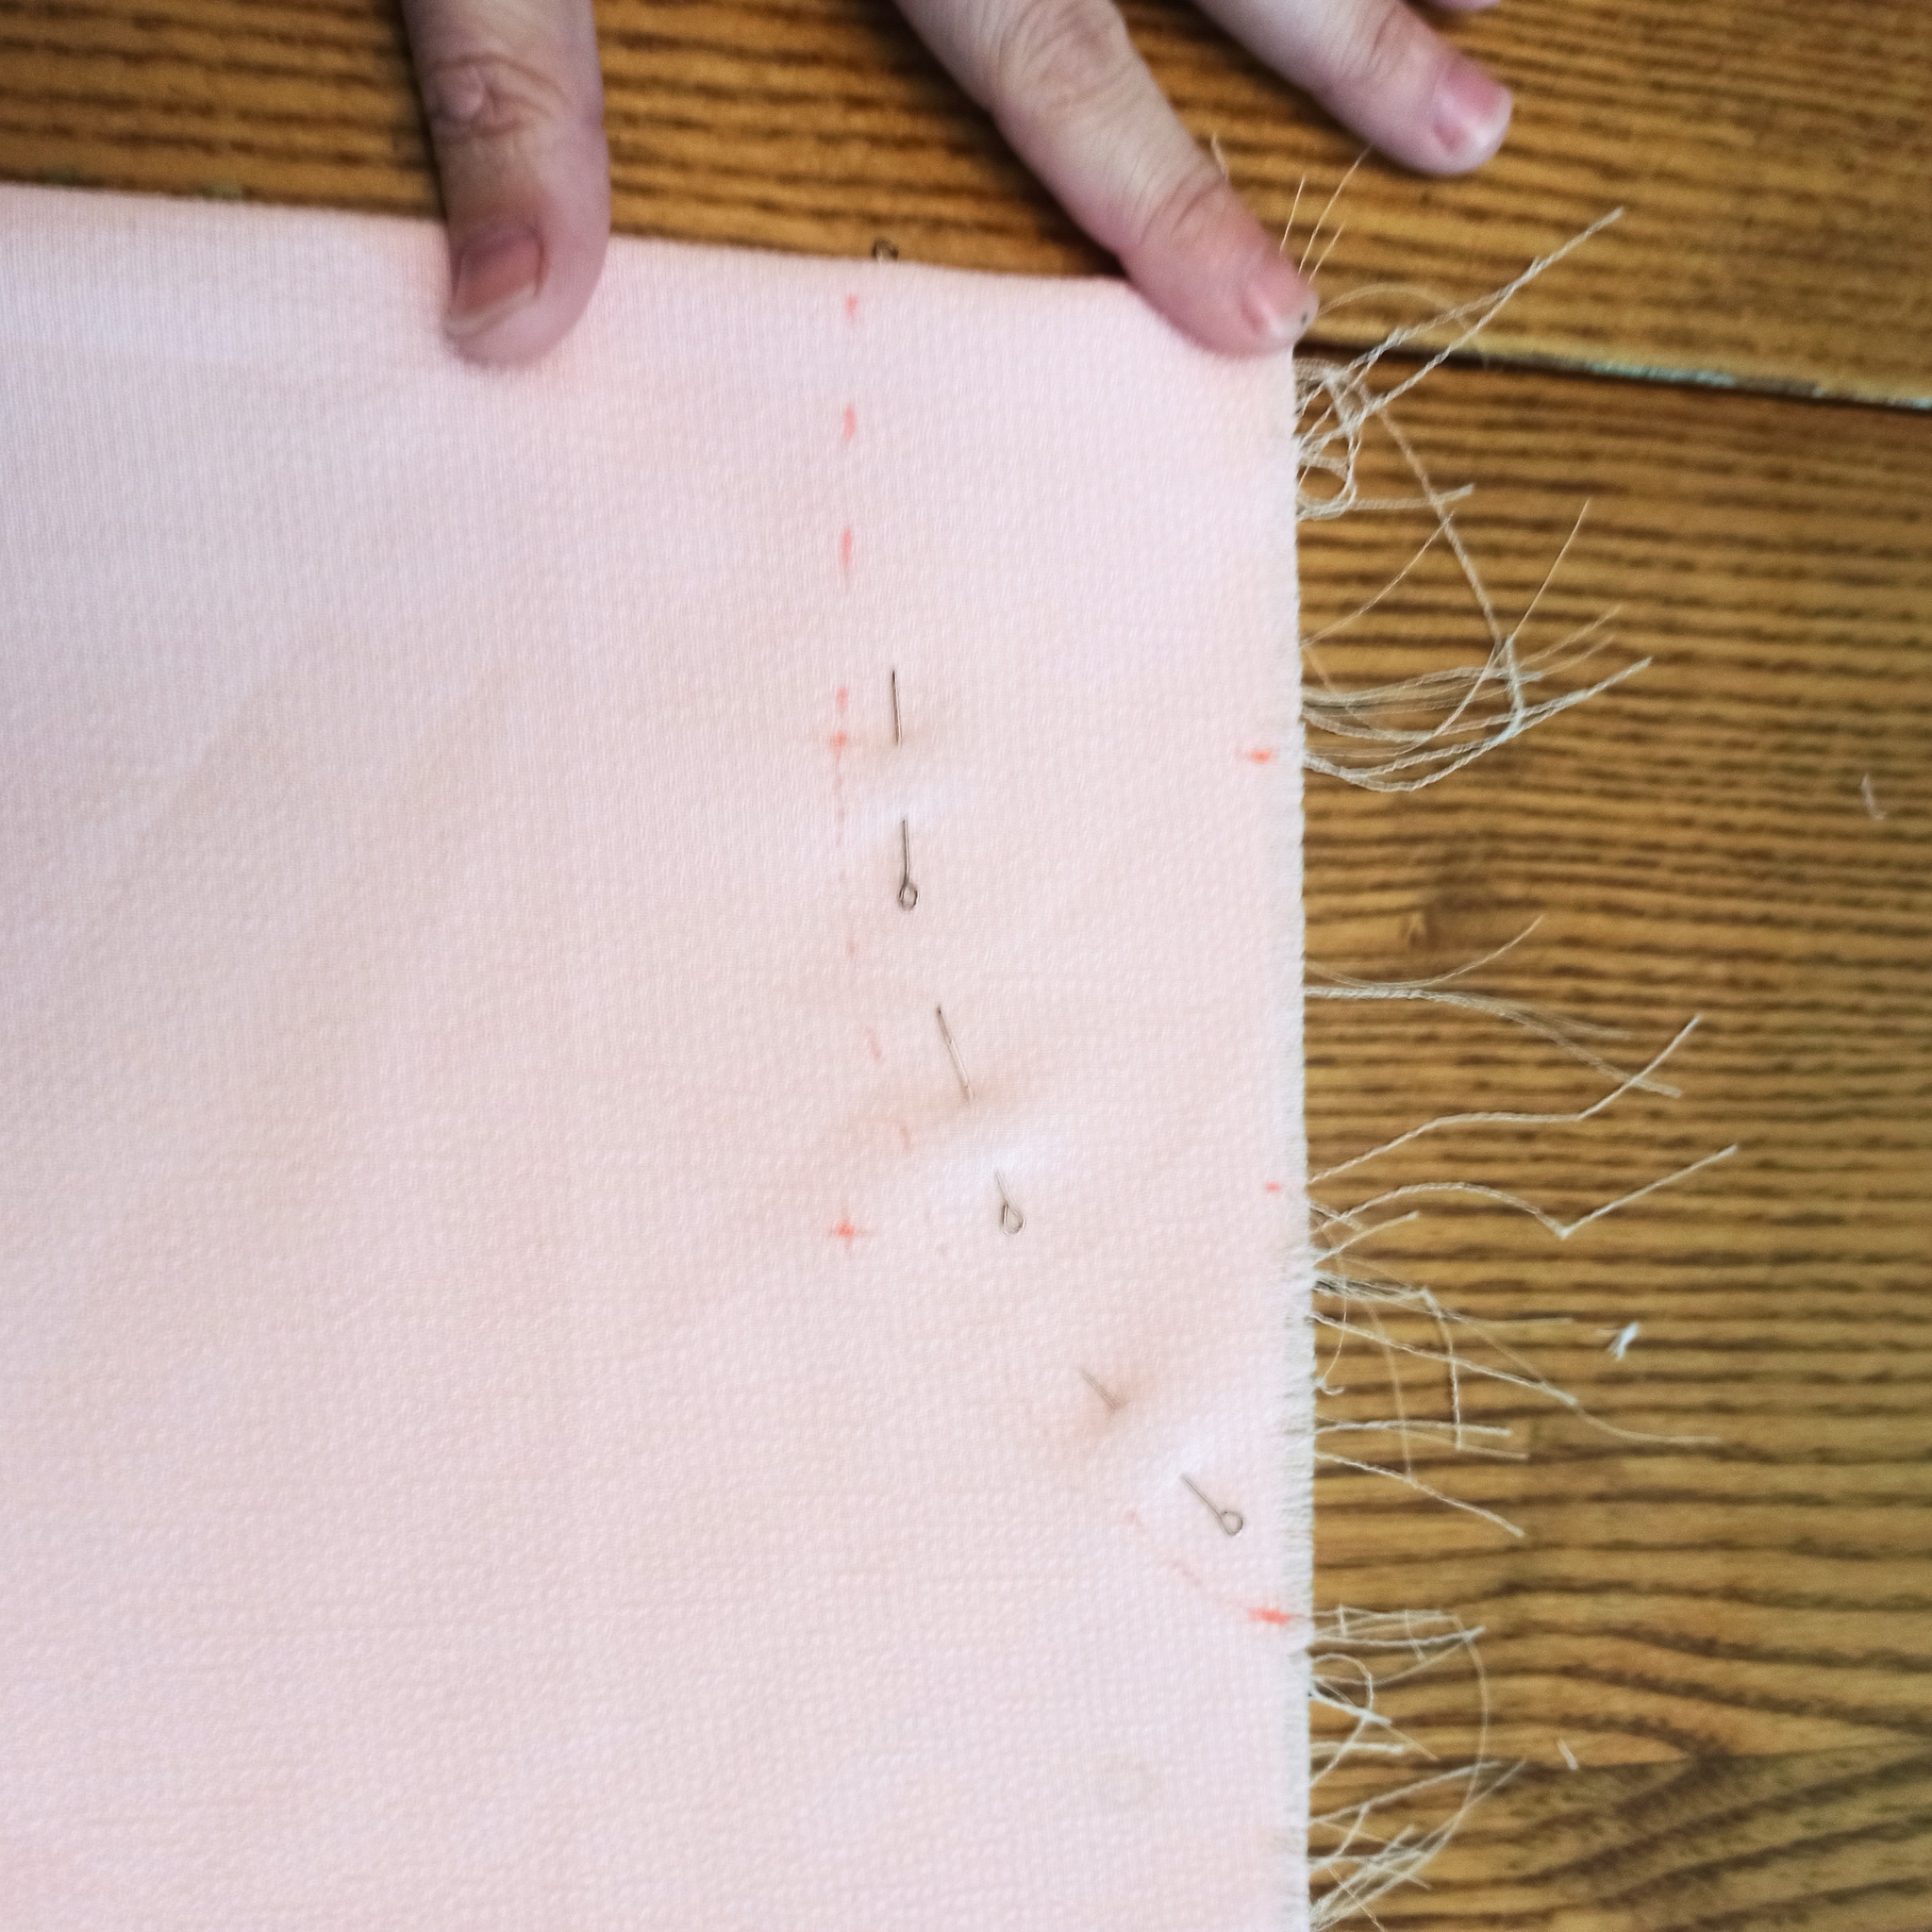 Дефекты, причины возникновения и способы их устранения - Азбука шитья - Всё о шитье